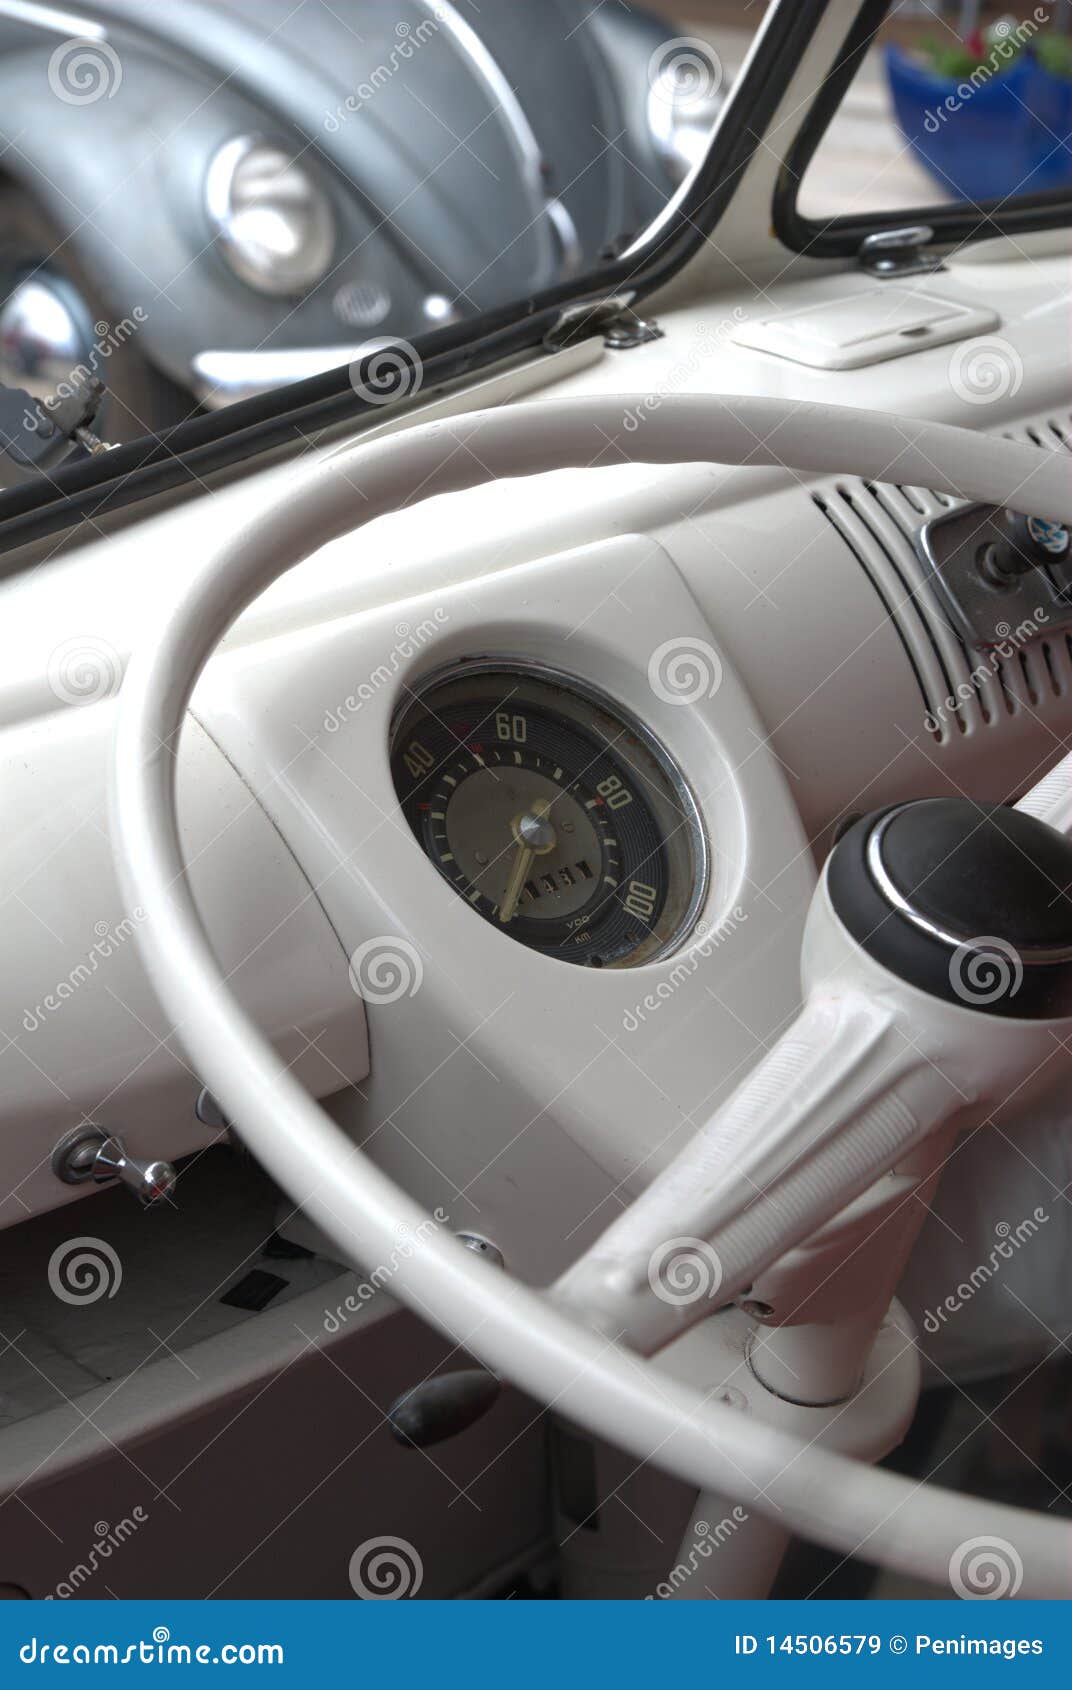 Vw Van Interior Stock Image Image Of Volkswagen Beetle